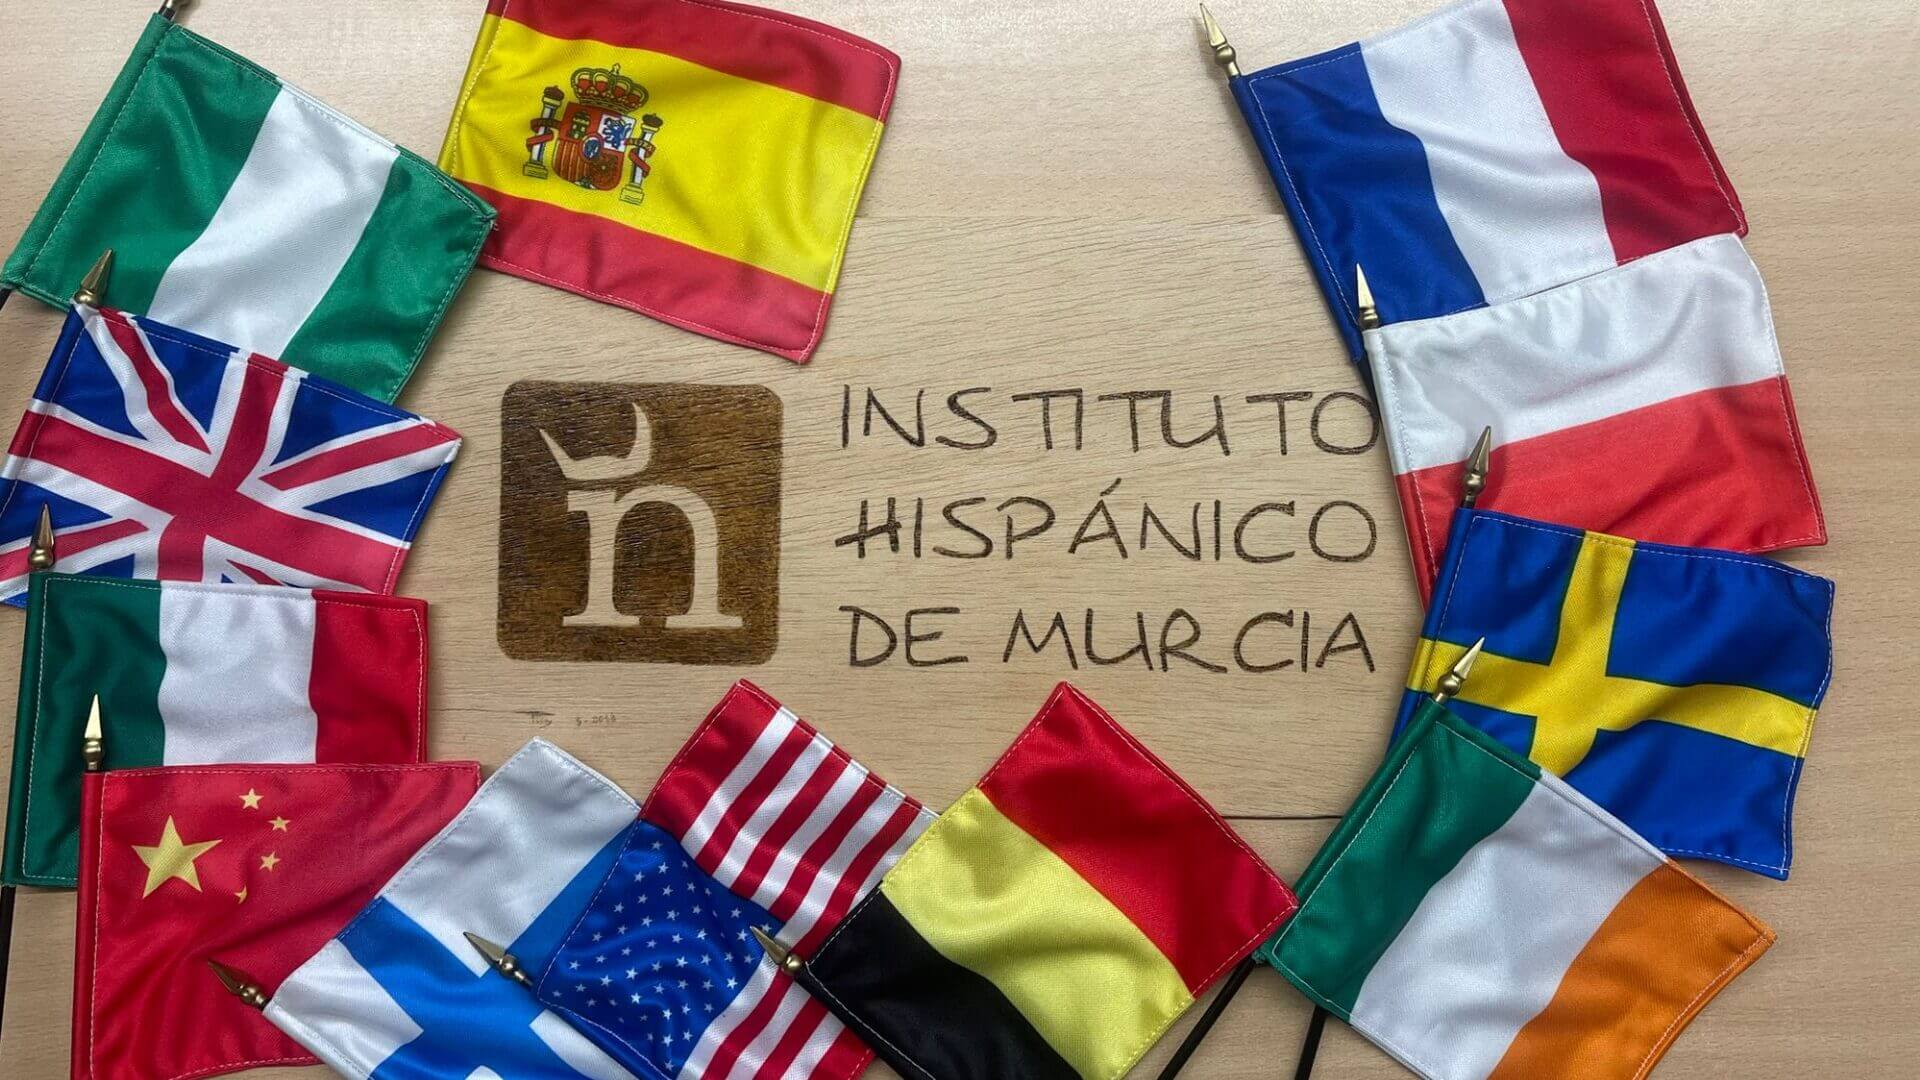 Instituto Hispánico de Murcia - NIE والجنسية: دليل شامل للحصول عليهما